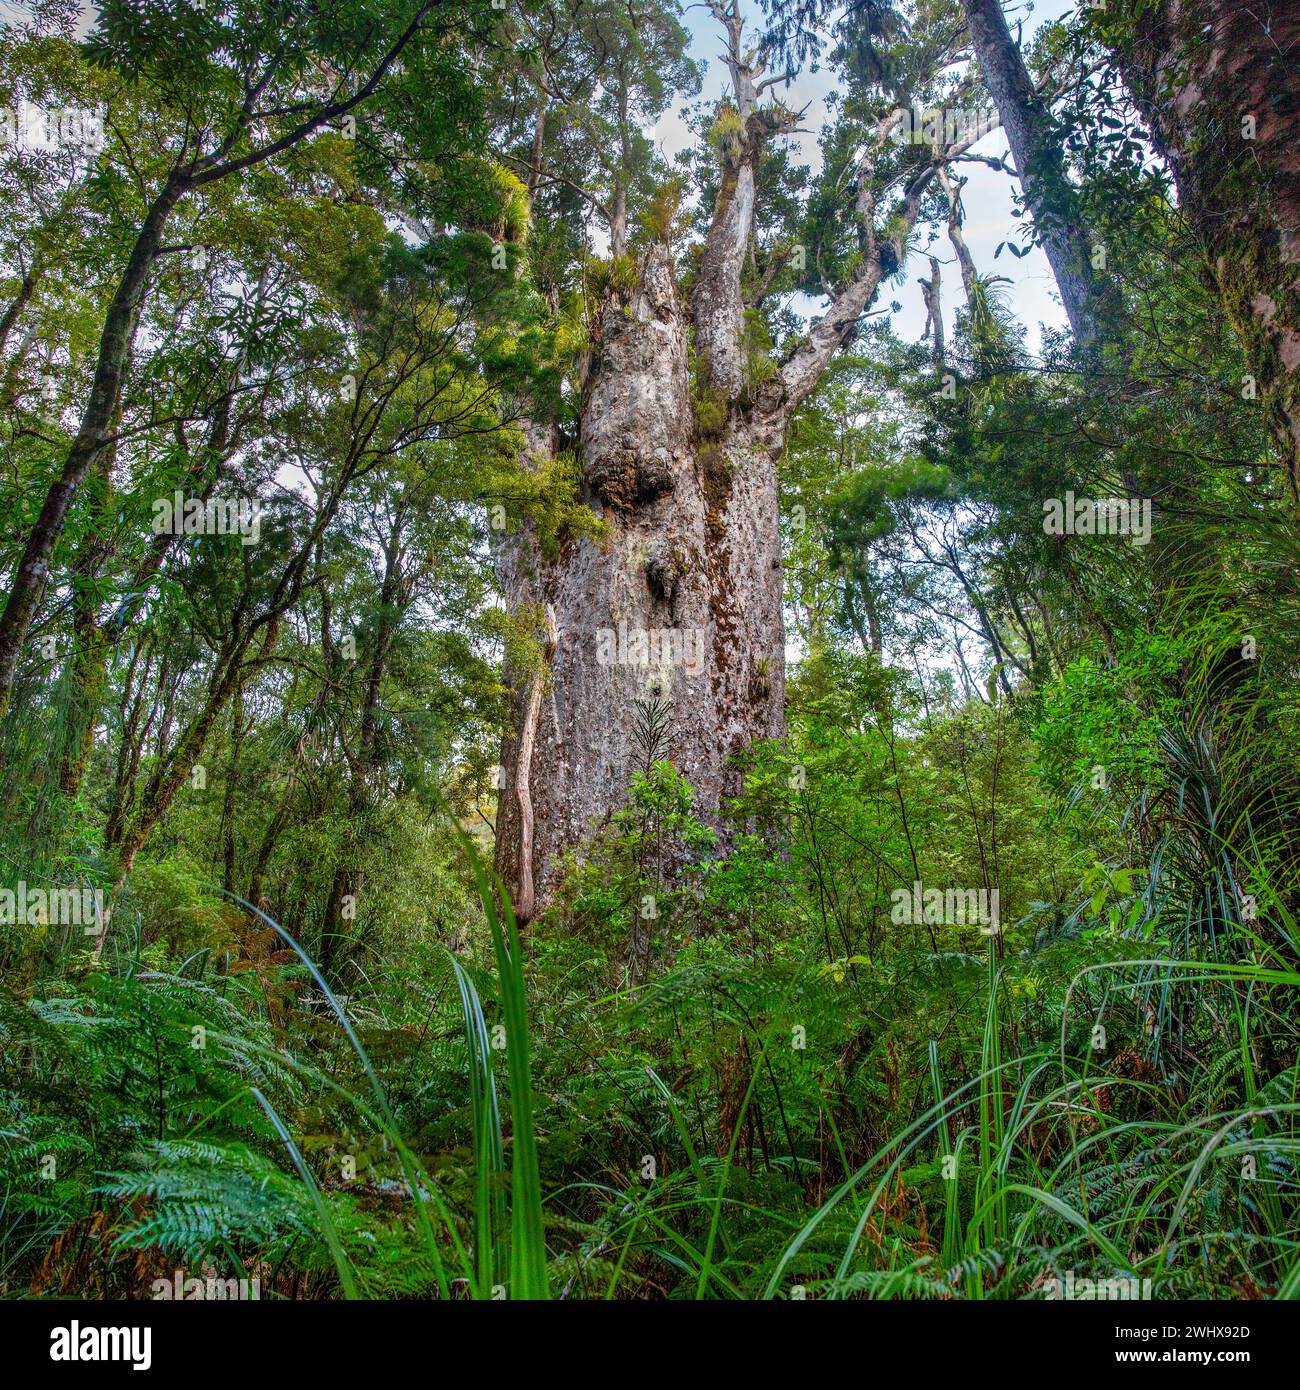 Te Matua Ngahere (padre della foresta) è un albero di conifere gigante kauri (Agathis australis) nella foresta di Waipoua nella regione del Northland, nuova Zelanda. T Foto Stock